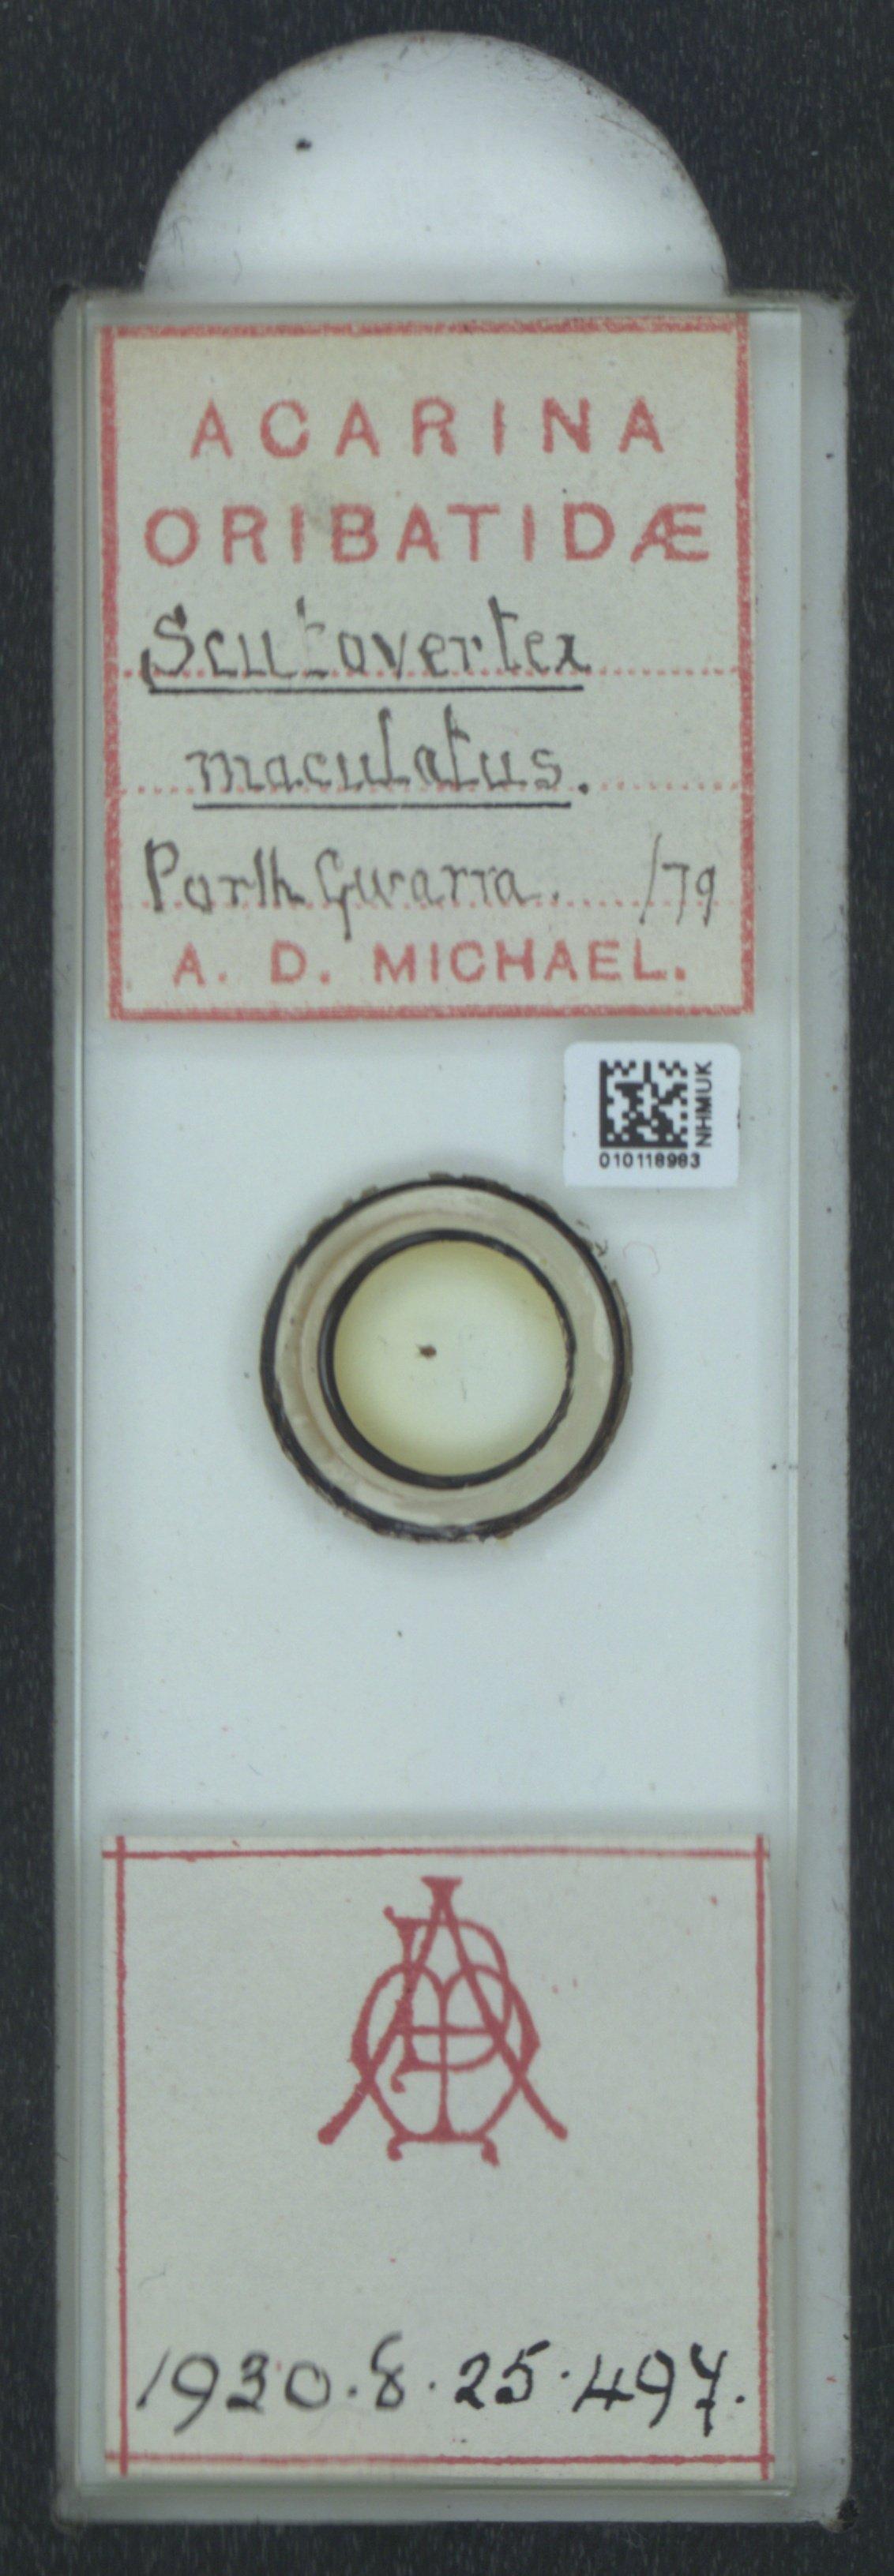 To NHMUK collection (Scutovertex maculatus A.D. Michael, 1882; NHMUK:ecatalogue:6550125)